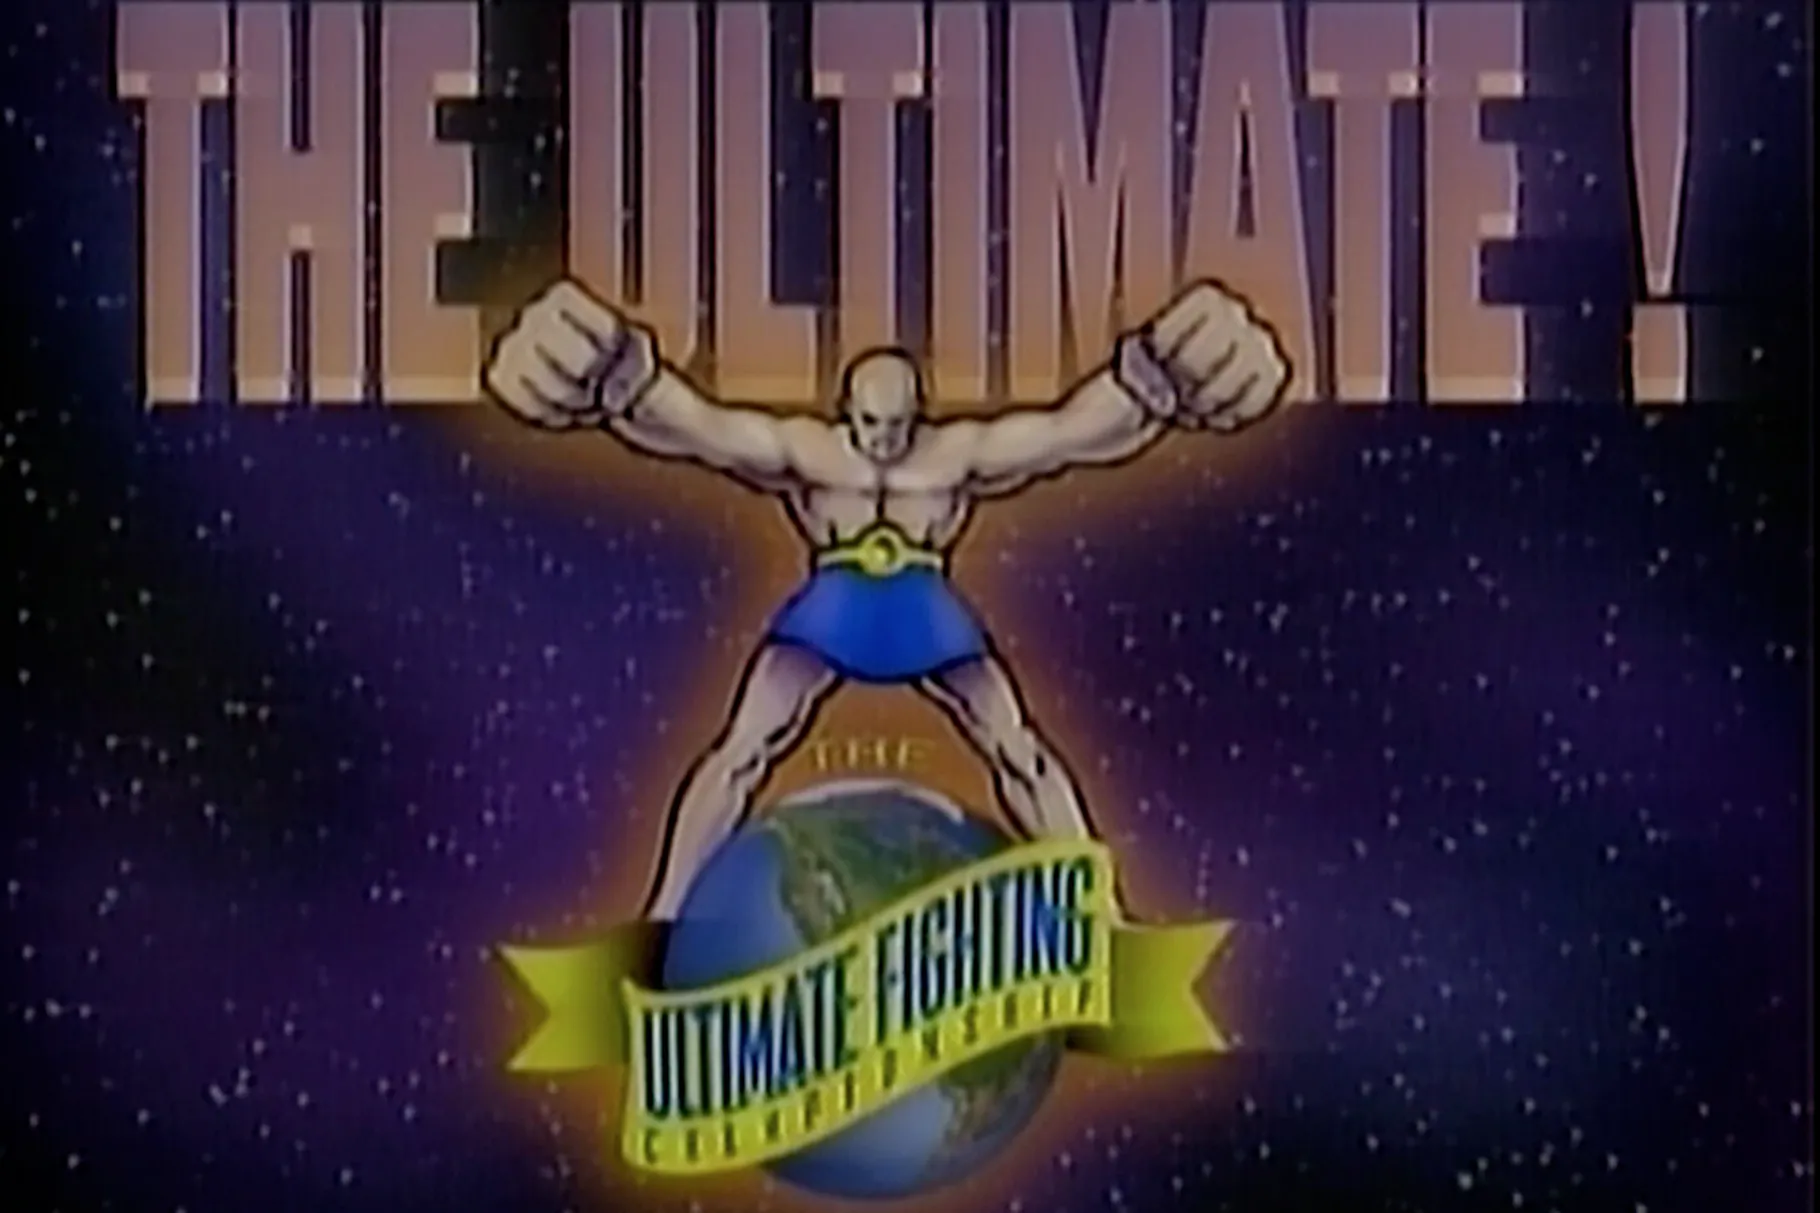 Original UFC logo